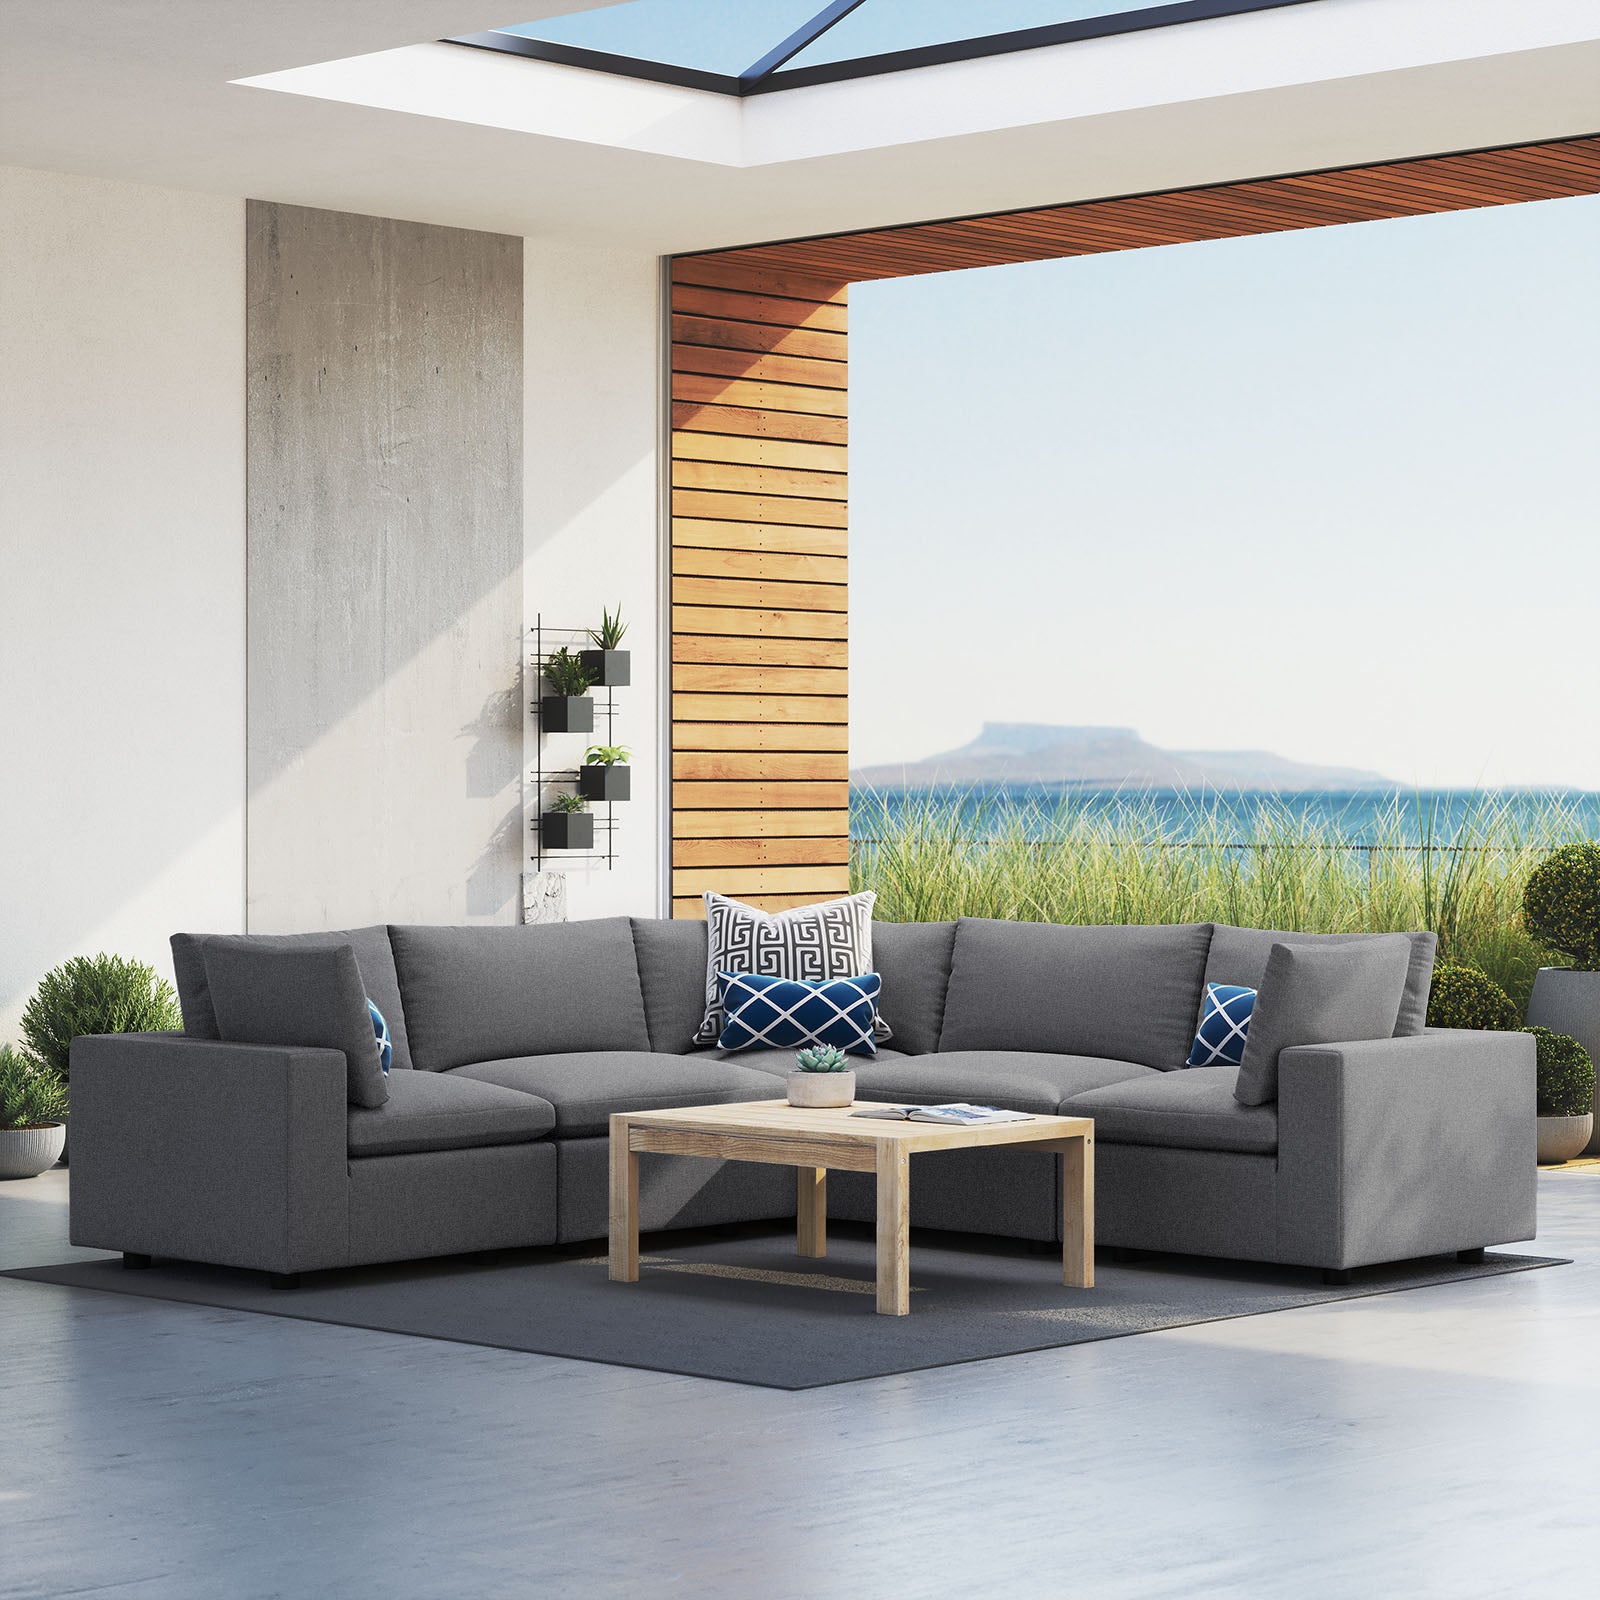 Modway Outdoor Sofas - Commix 5-Piece Sunbrella Outdoor Patio Sectional Sofa Gray